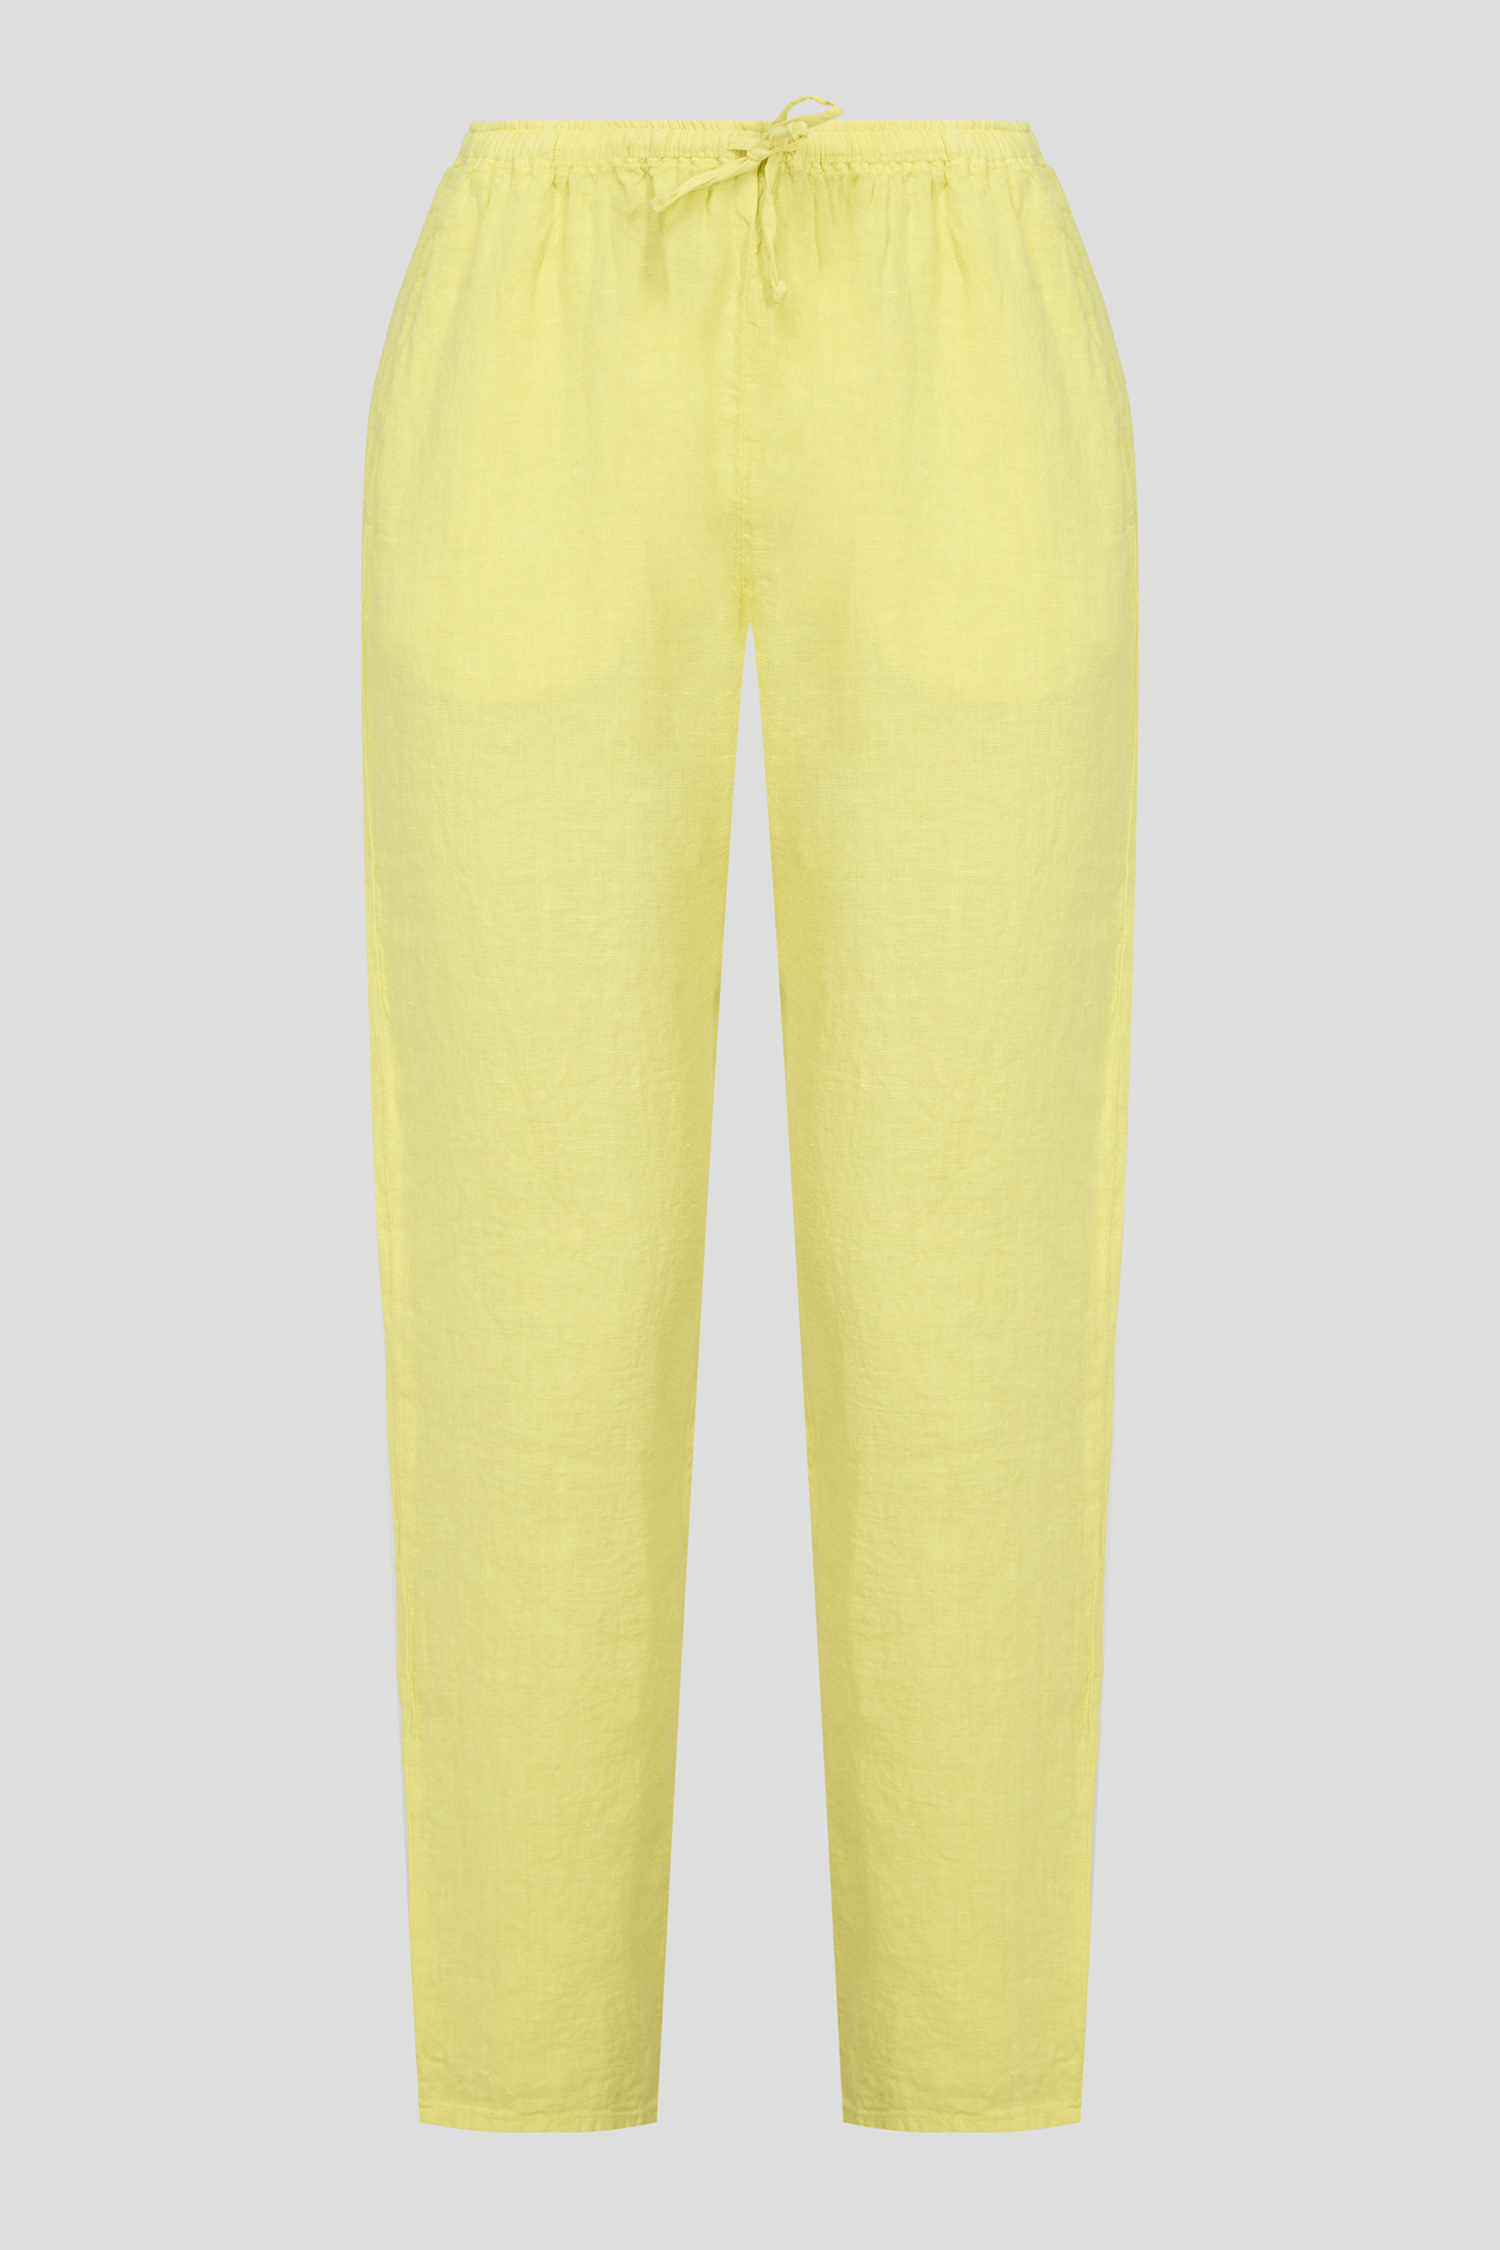 Женские желтые льняные брюки 1